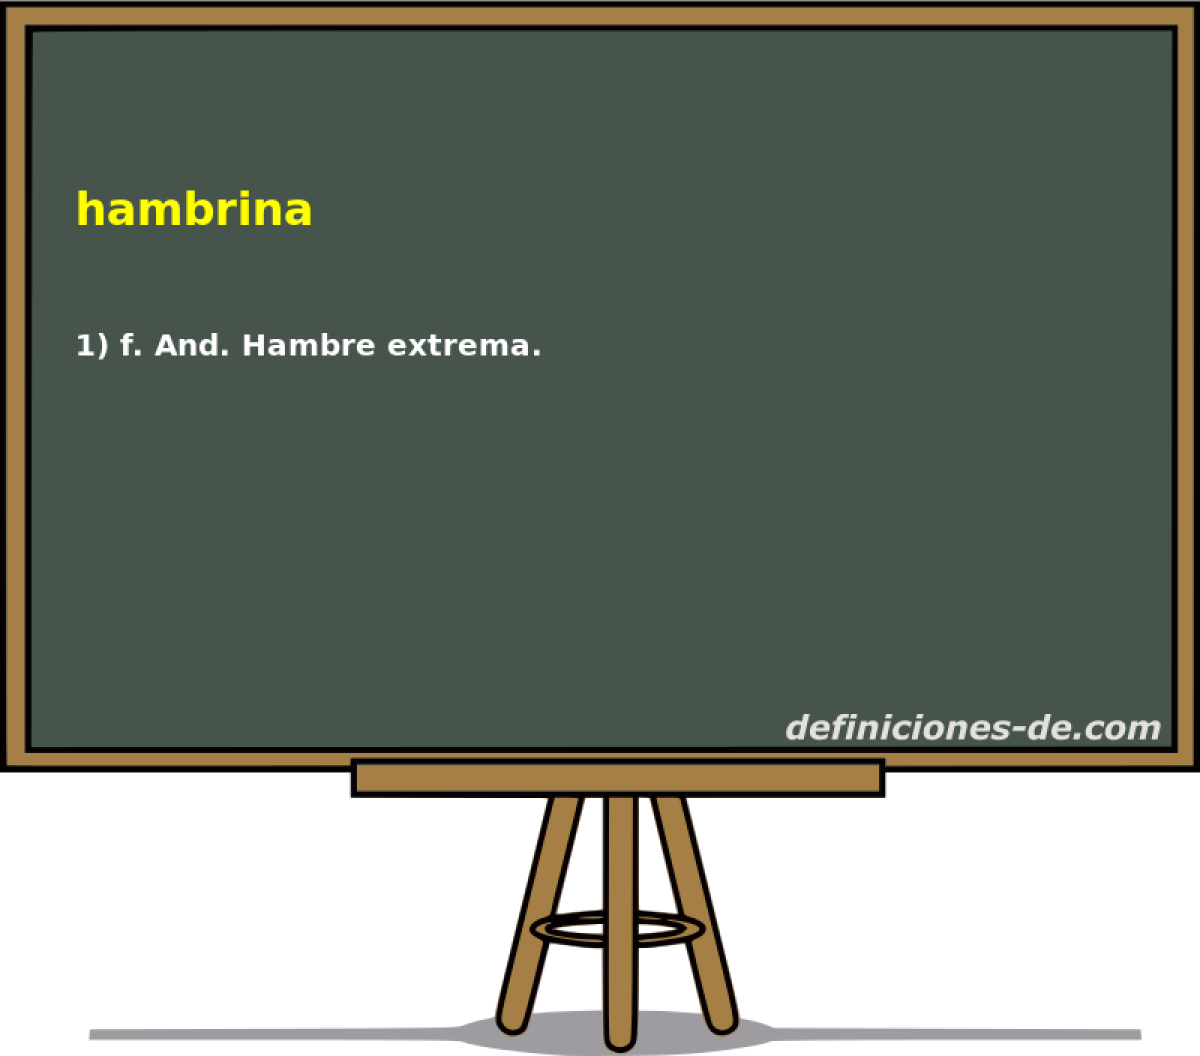 hambrina 